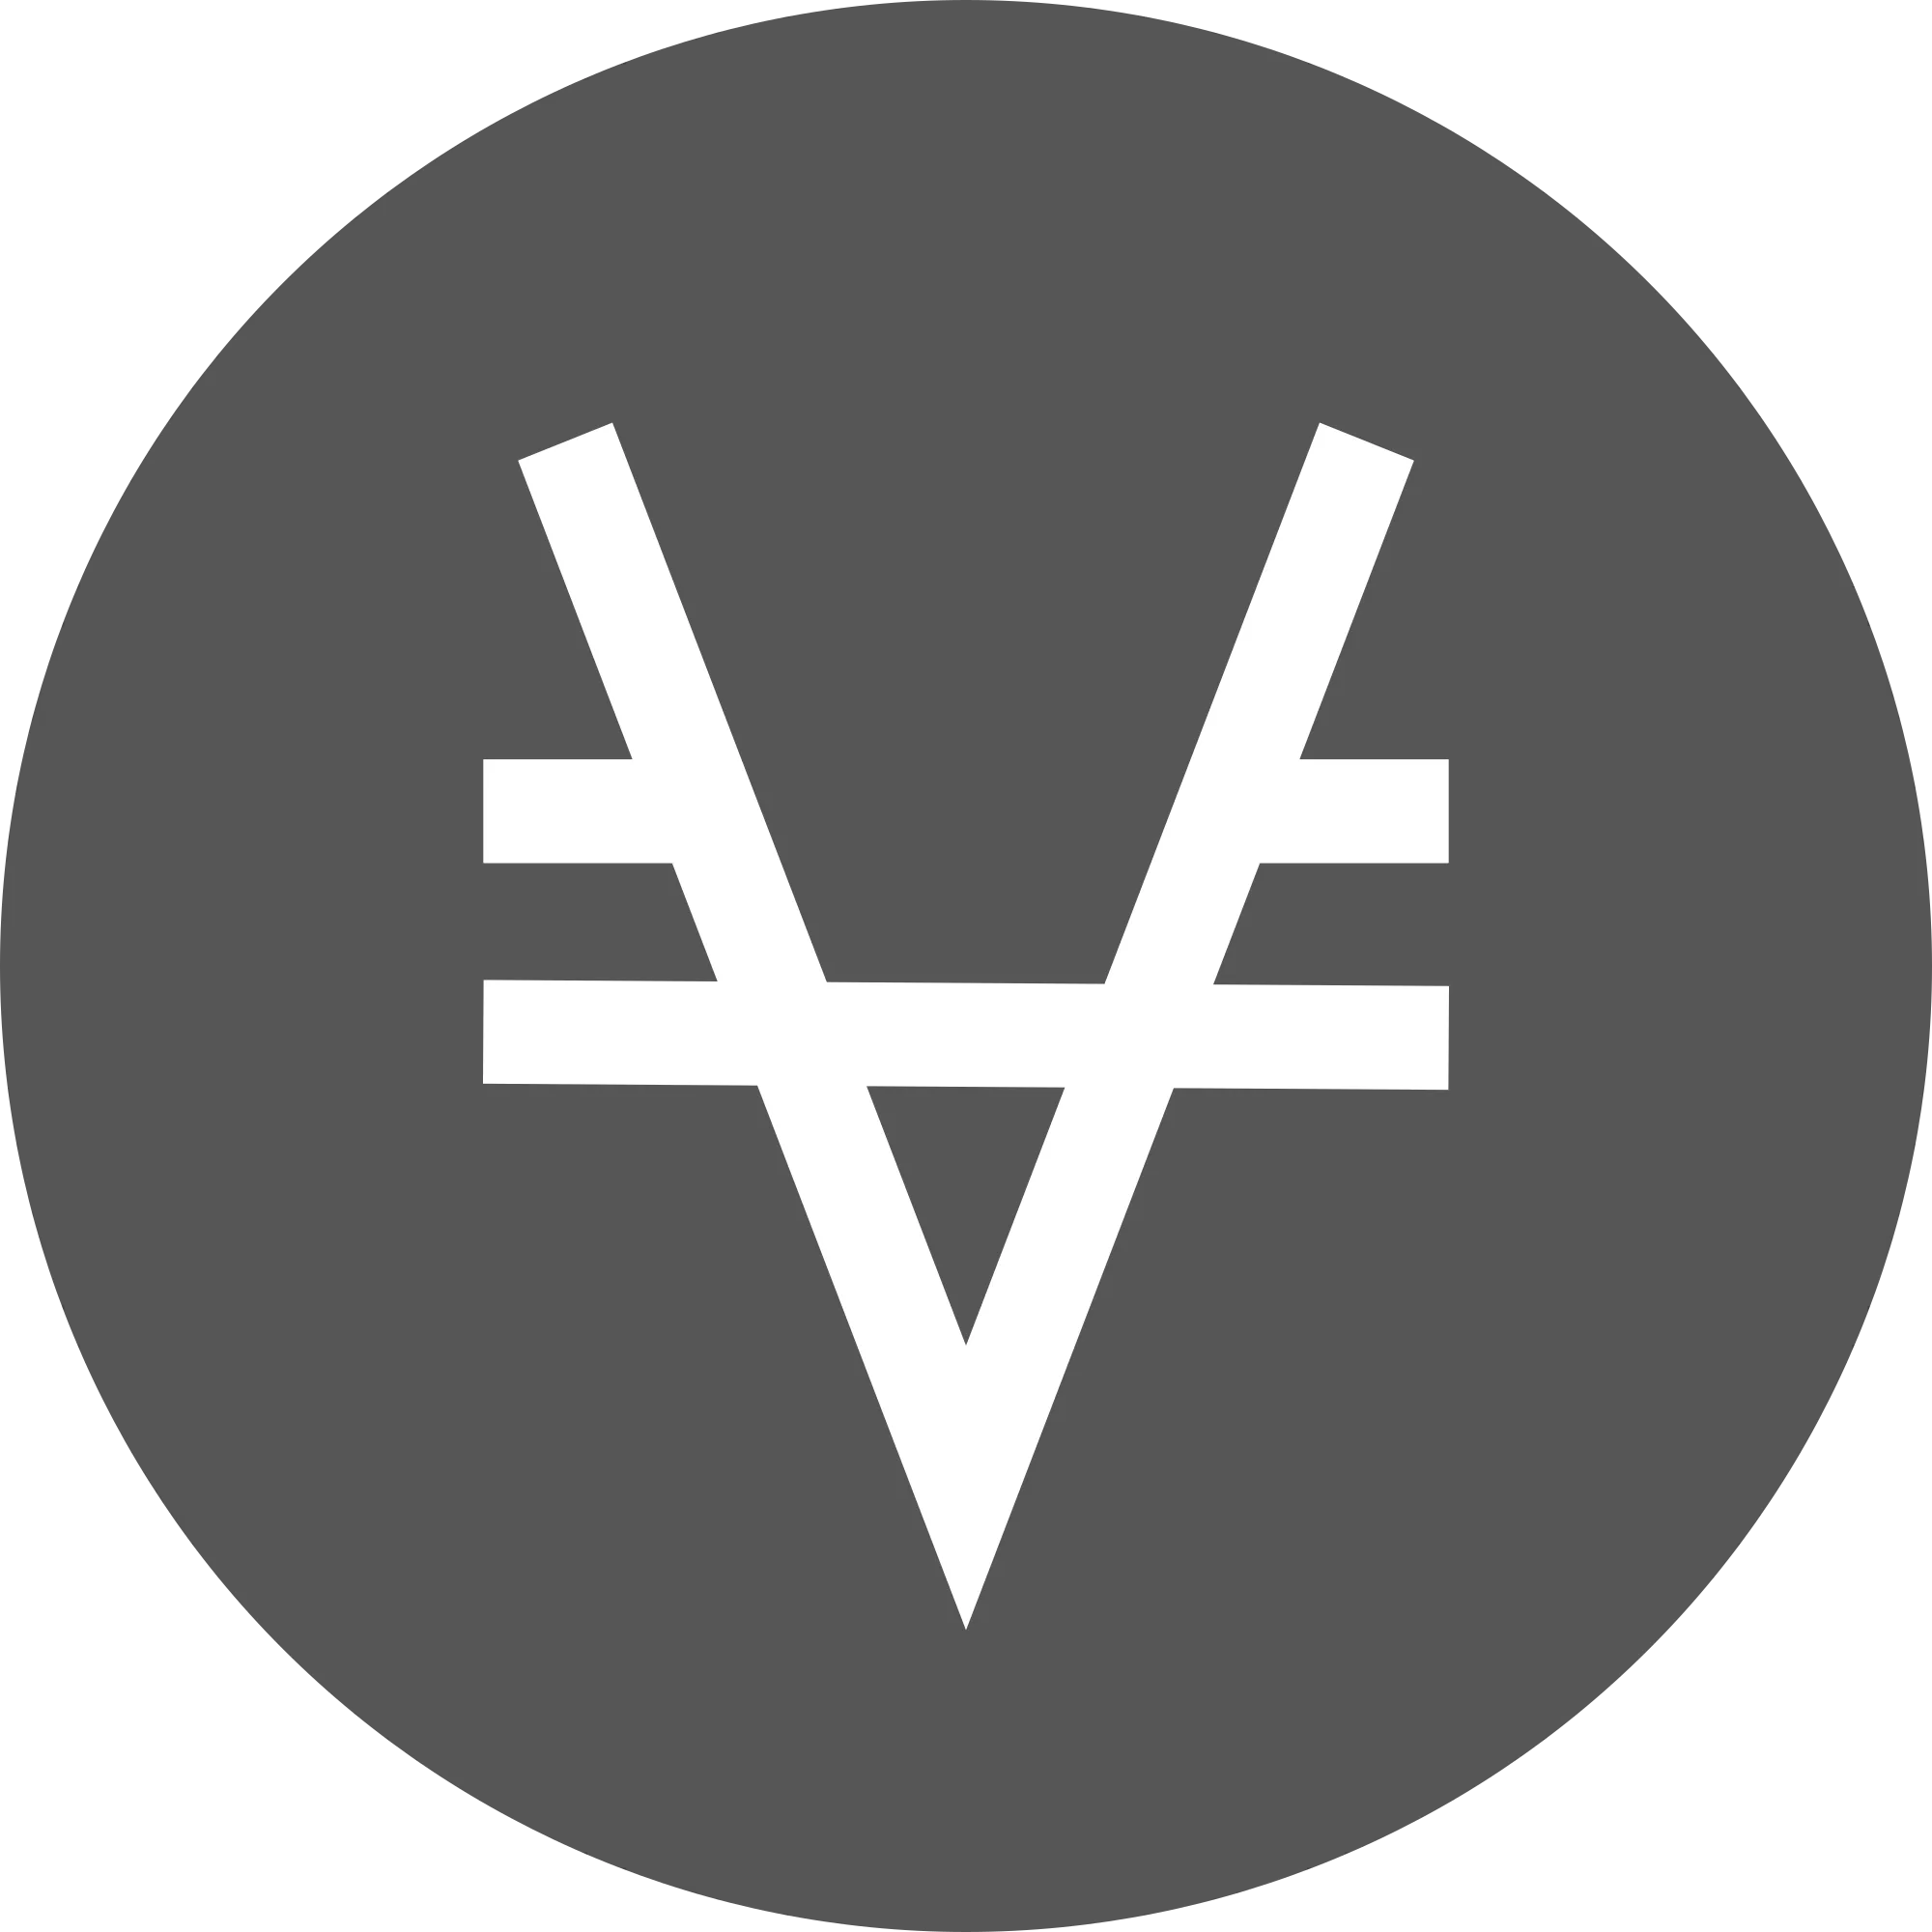 Viacoin (VIA) logo